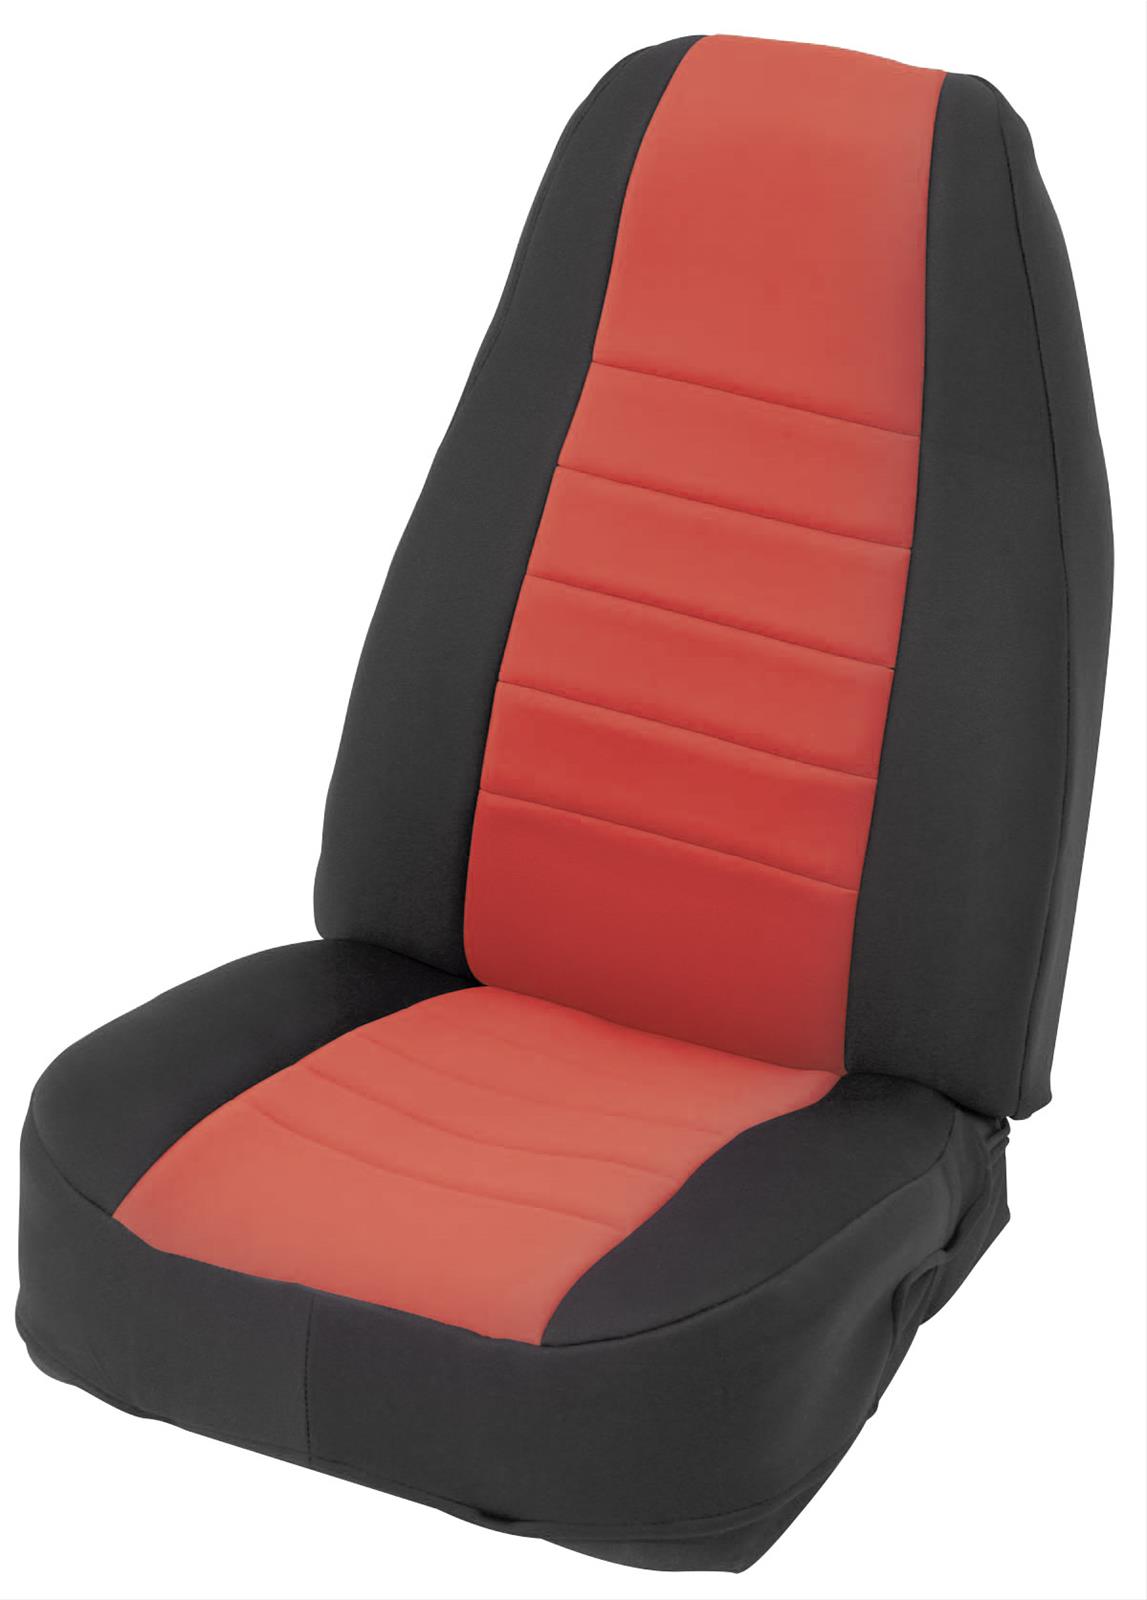 Smittybilt 471630 Neoprene Seat Cover Set 